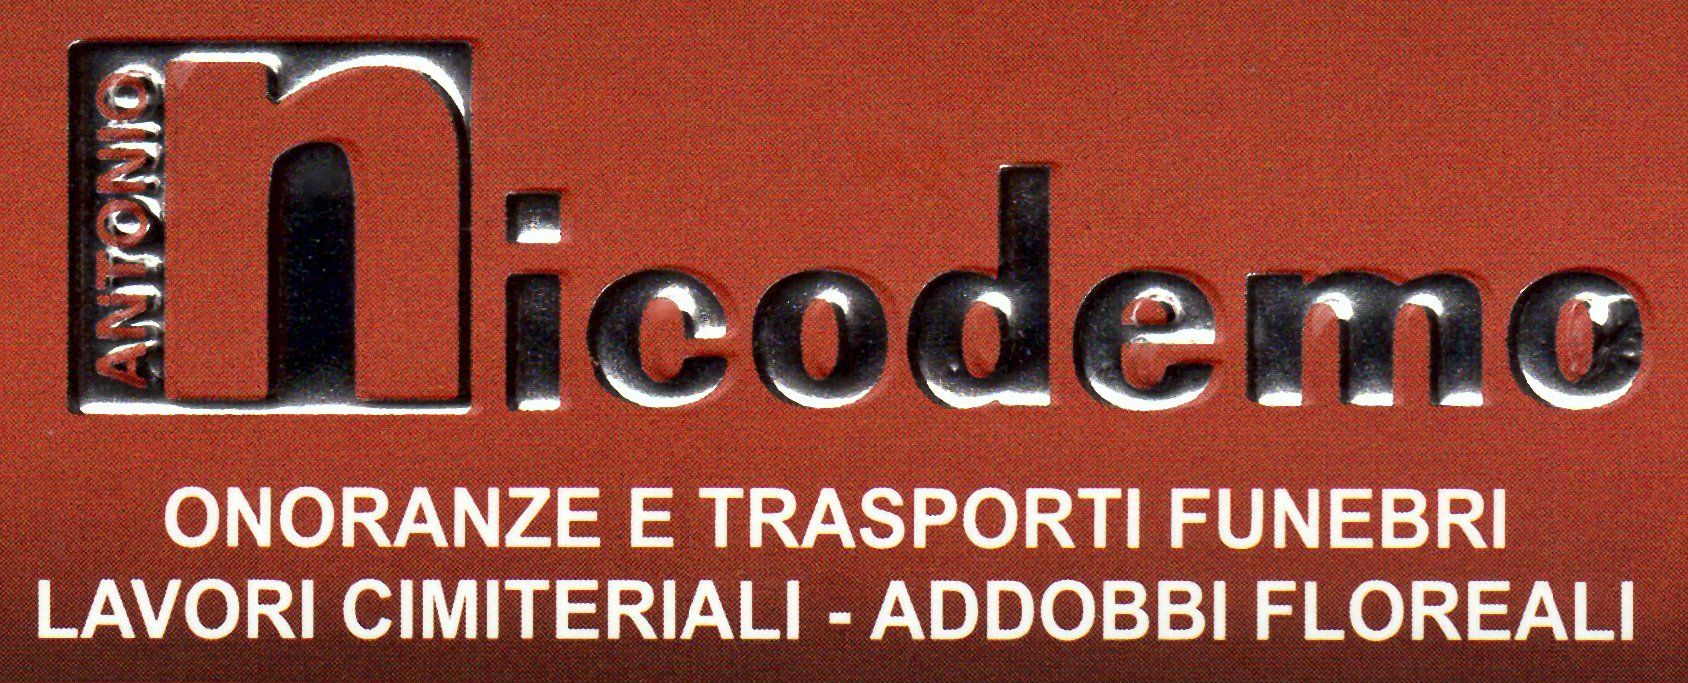 ONORANZE FUNEBRI NICODEMO-Logo